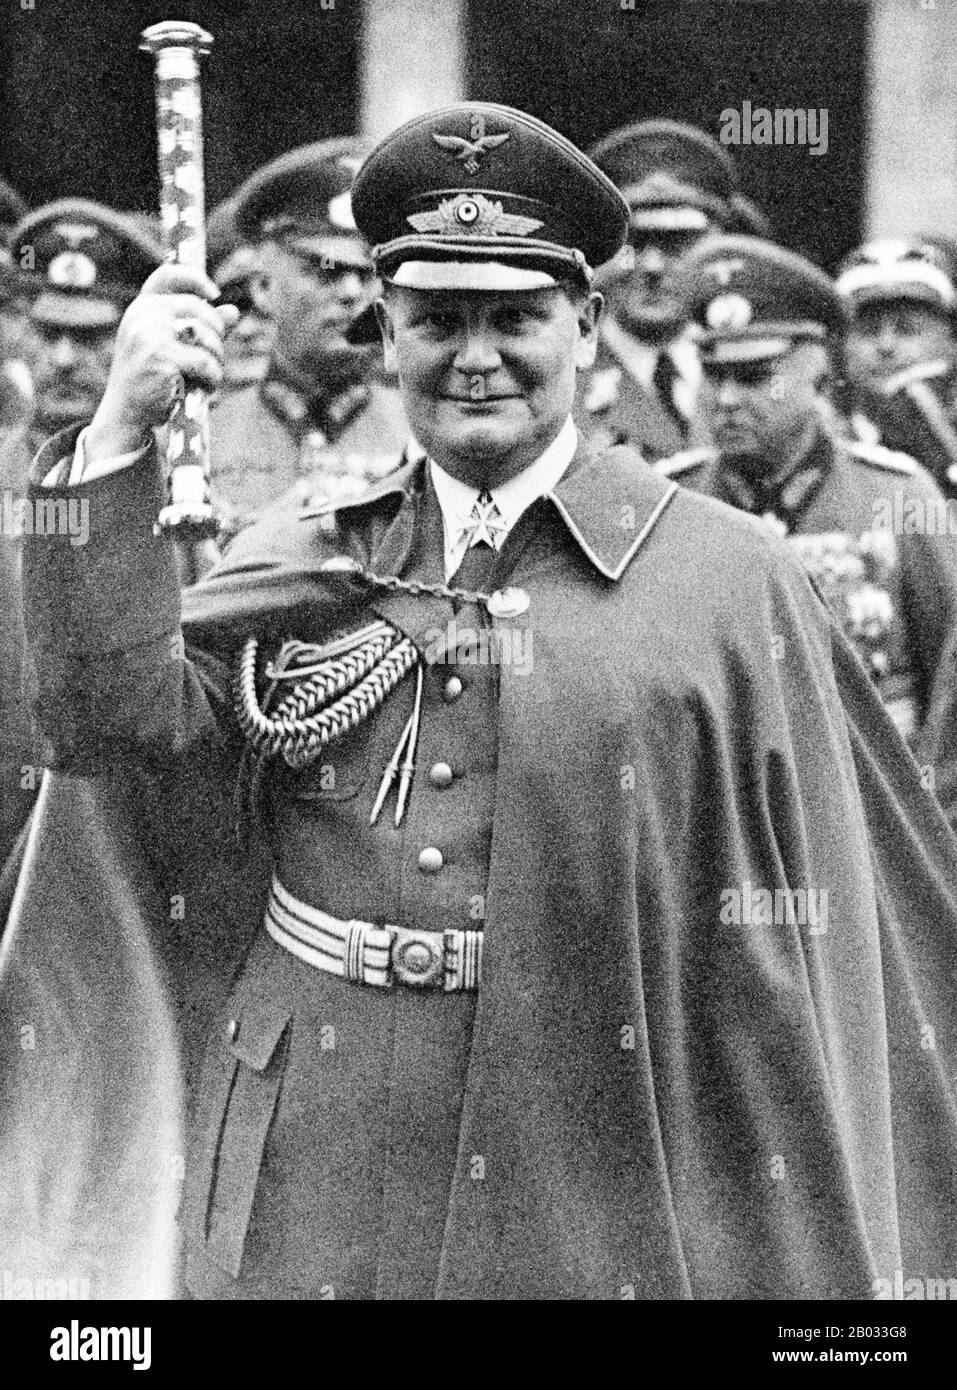 Hermann Wilhelm Goering (NSDAP, 12 gennaio 1893 – 15 ottobre 1946) è stato un . Dopo aver aiutato Adolf Hitler a prendere il potere nel 1933, divenne il secondo uomo più potente della Germania. Fondò la Gestapo nel 1933, e successivamente la diede al comando di Heinrich Himmler. Göring fu nominato comandante in capo della Luftwaffe (forza aerea) nel 1935, posizione che deteneva fino agli ultimi giorni della seconda guerra mondiale Dopo la seconda guerra mondiale, Göring fu condannato per crimini di guerra e crimini contro l'umanità durante i processi di Norimberga. È stato condannato a morte b Foto Stock